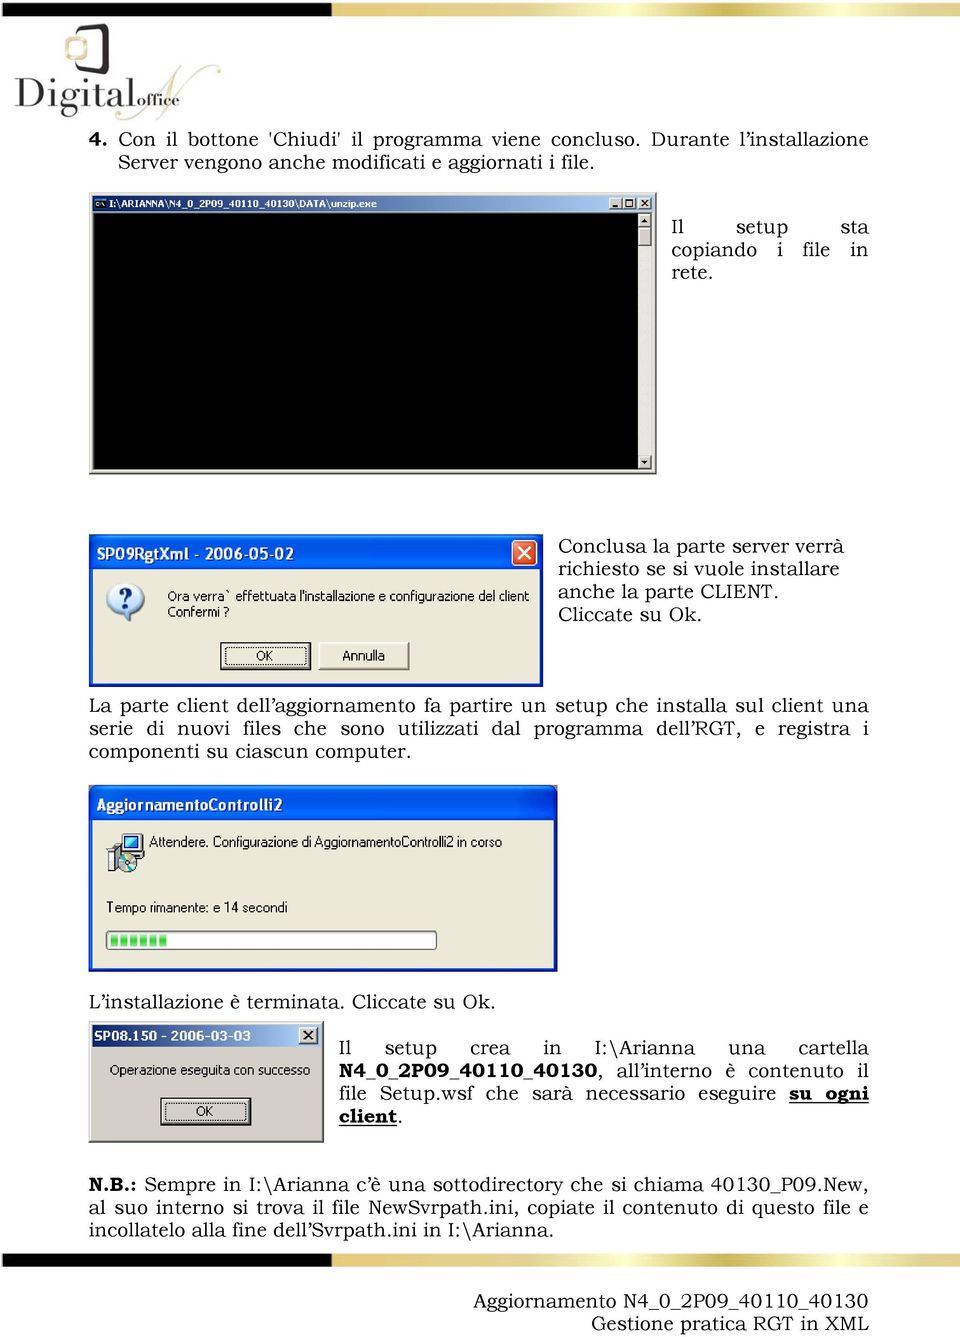 La parte client dell aggiornamento fa partire un setup che installa sul client una serie di nuovi files che sono utilizzati dal programma dell RGT, e registra i componenti su ciascun computer.